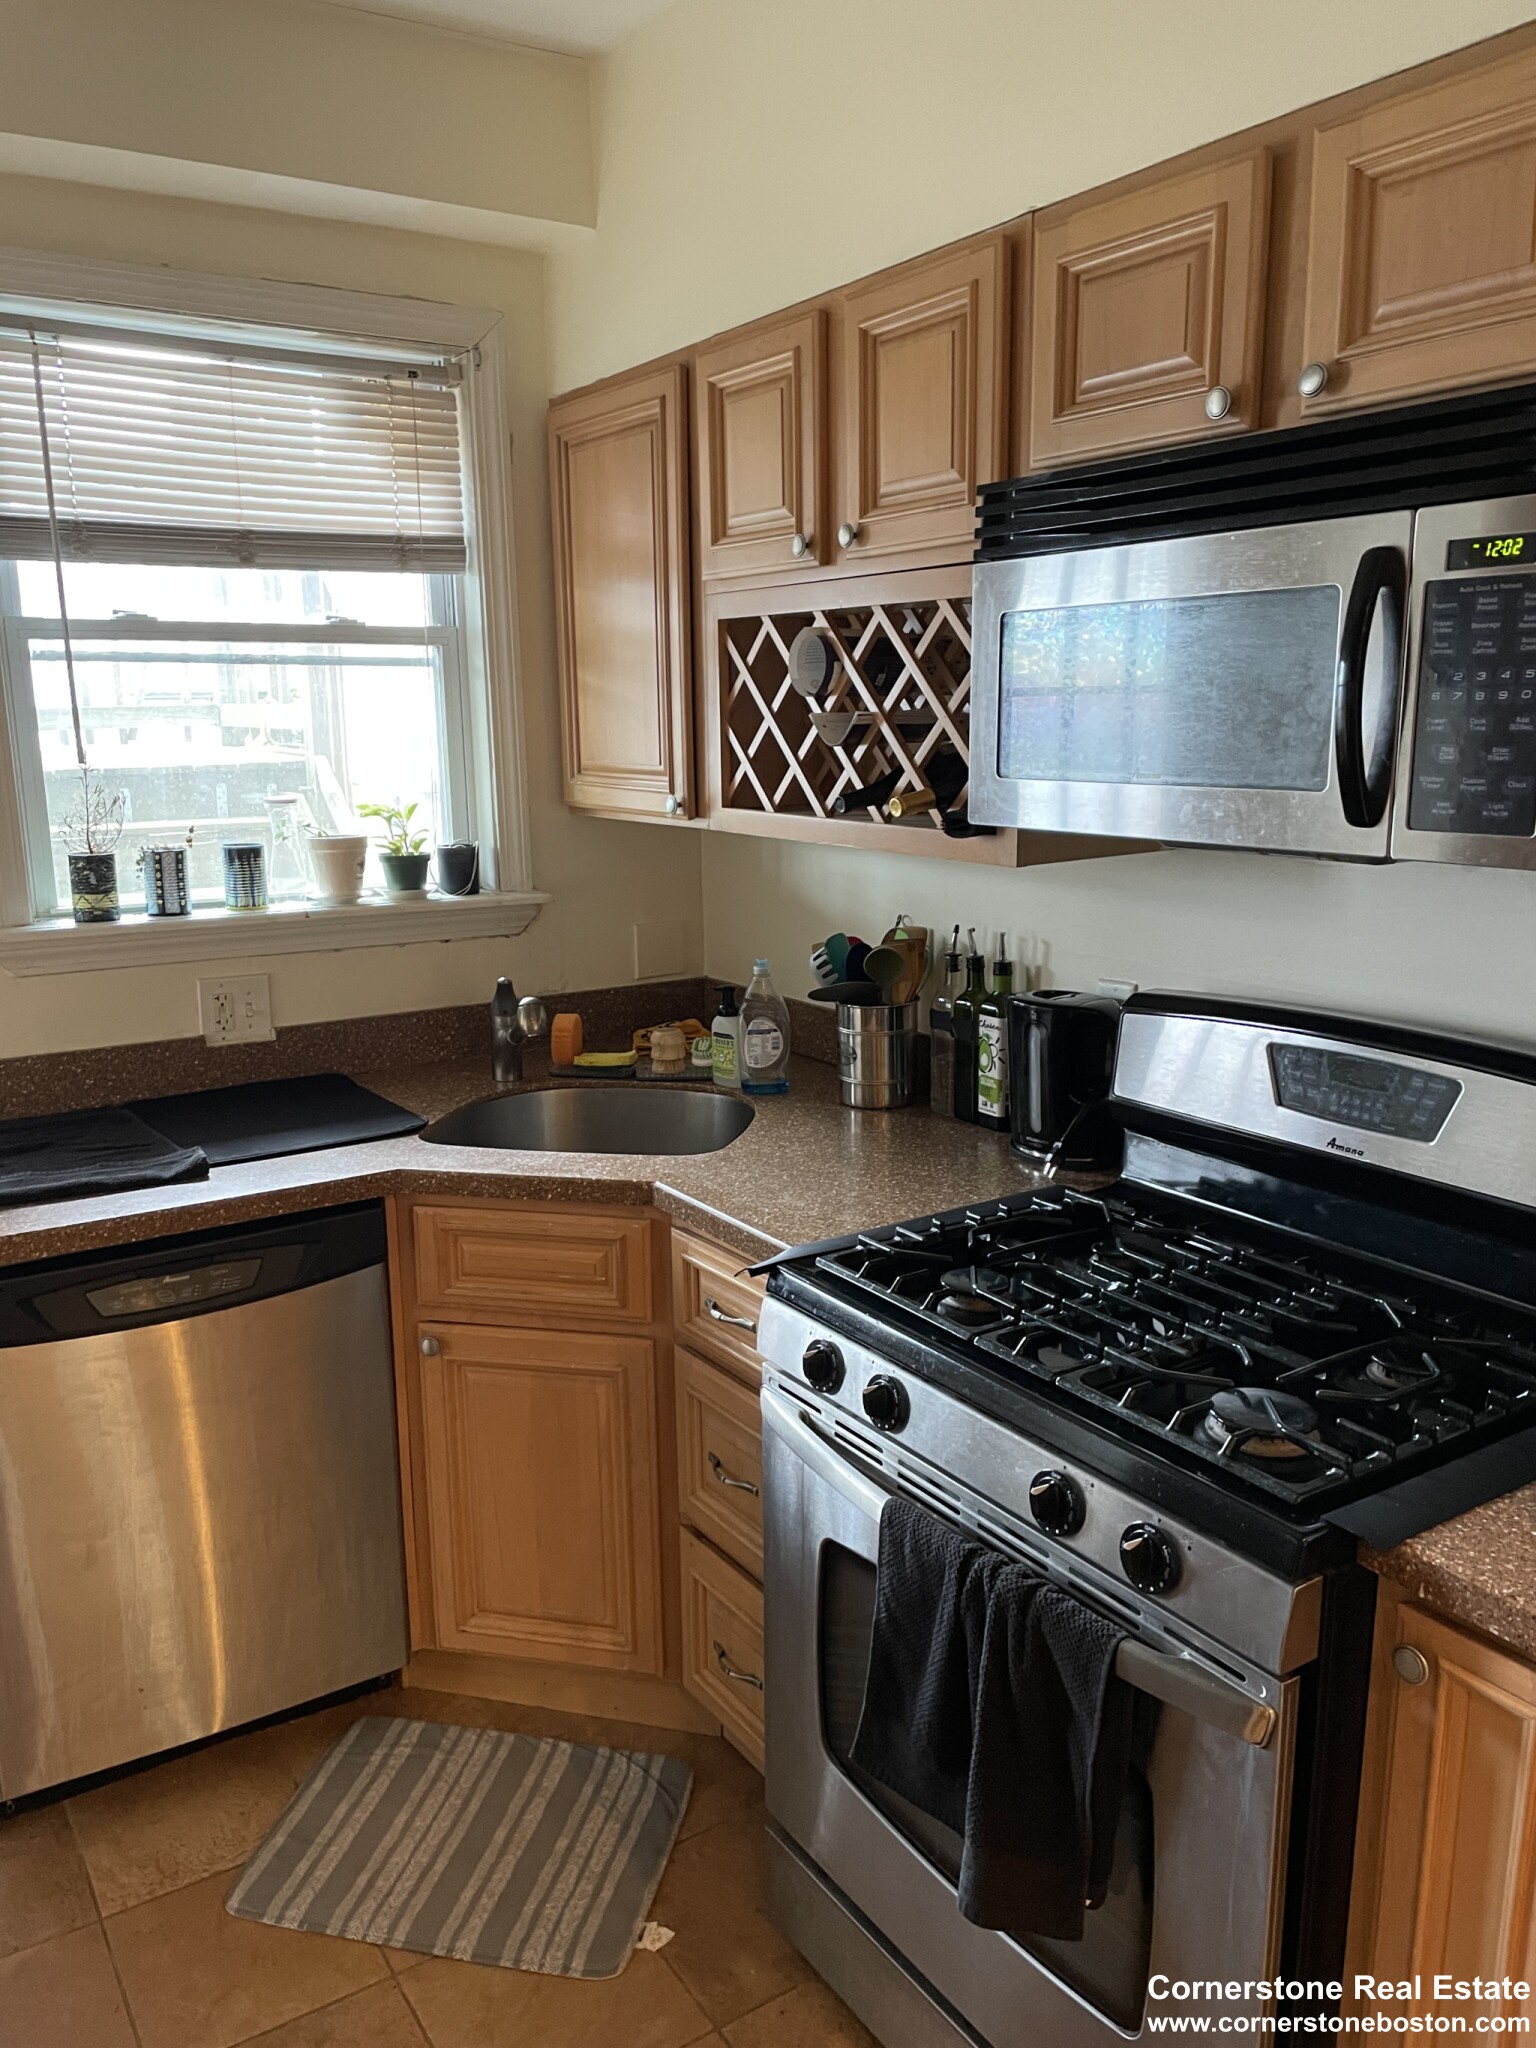 Photos of apartment on Washington St.,Boston MA 02119